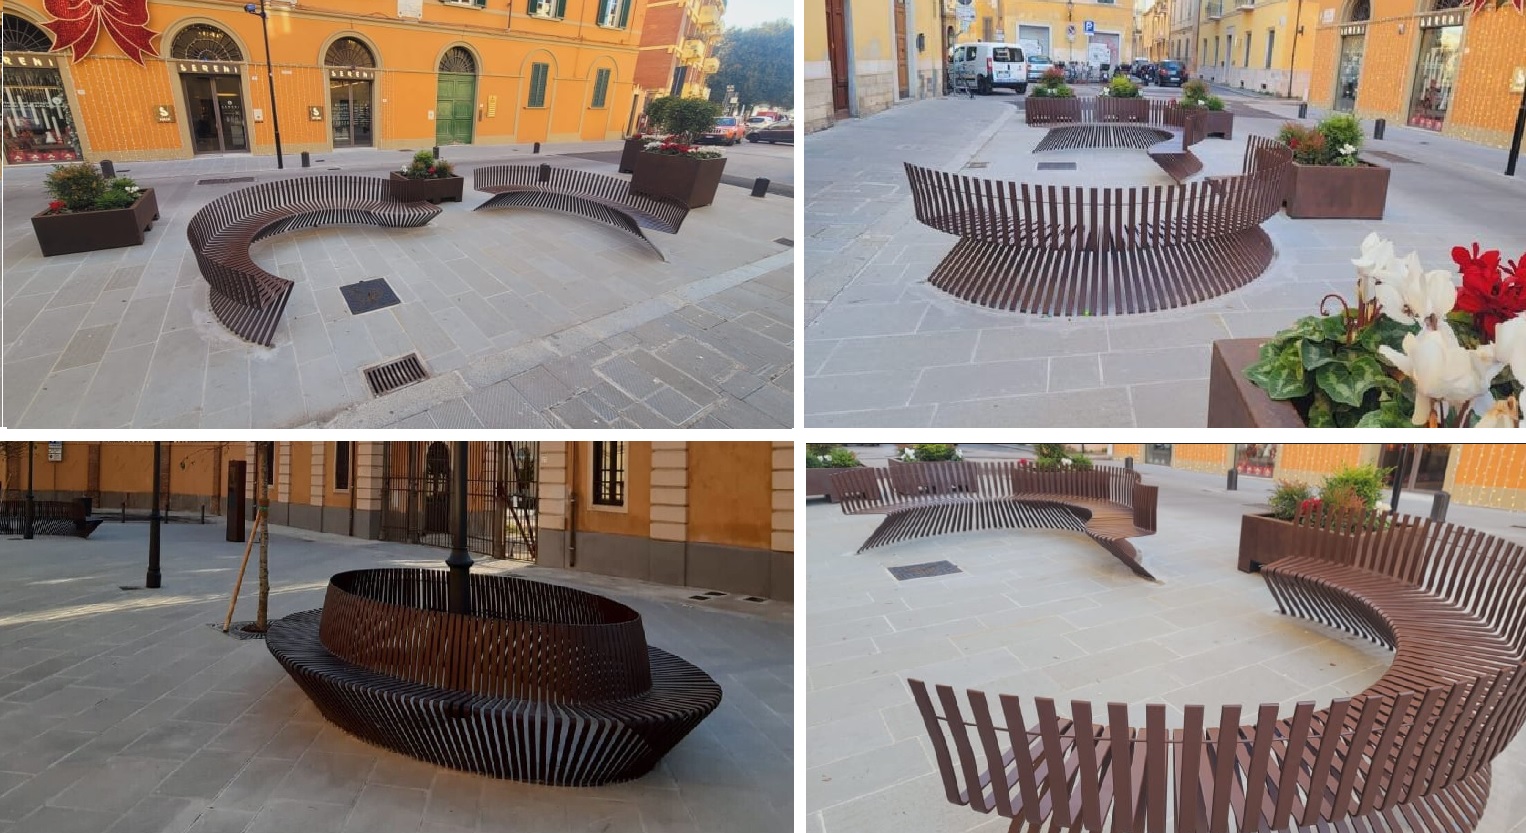 GTSM-Modo-Fenicia-Referenz-Pisa-Italien-Piazzetta Largo Spadoni-Sitzgelegenheit-öffentlicher Platz-Aussenmöbel-Parkbank-rund